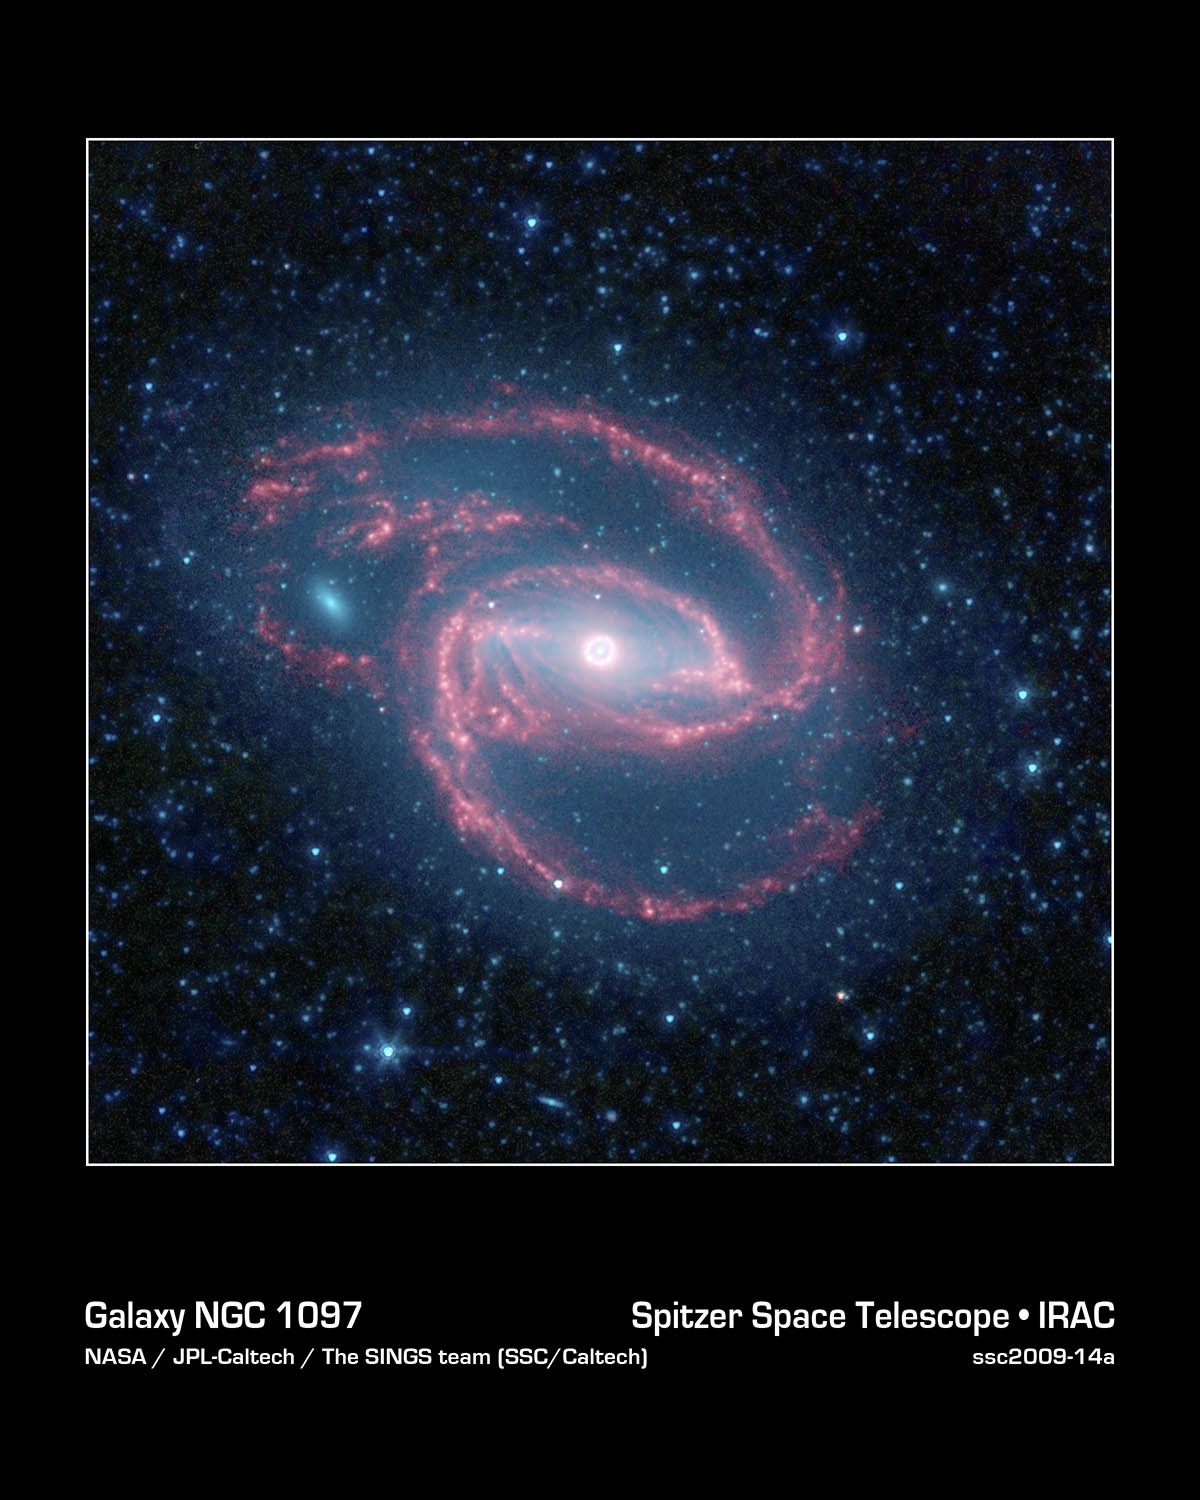 La galaxie spirale NGC 1097, un œil cosmique... Crédit : Nasa/JPL-Caltech